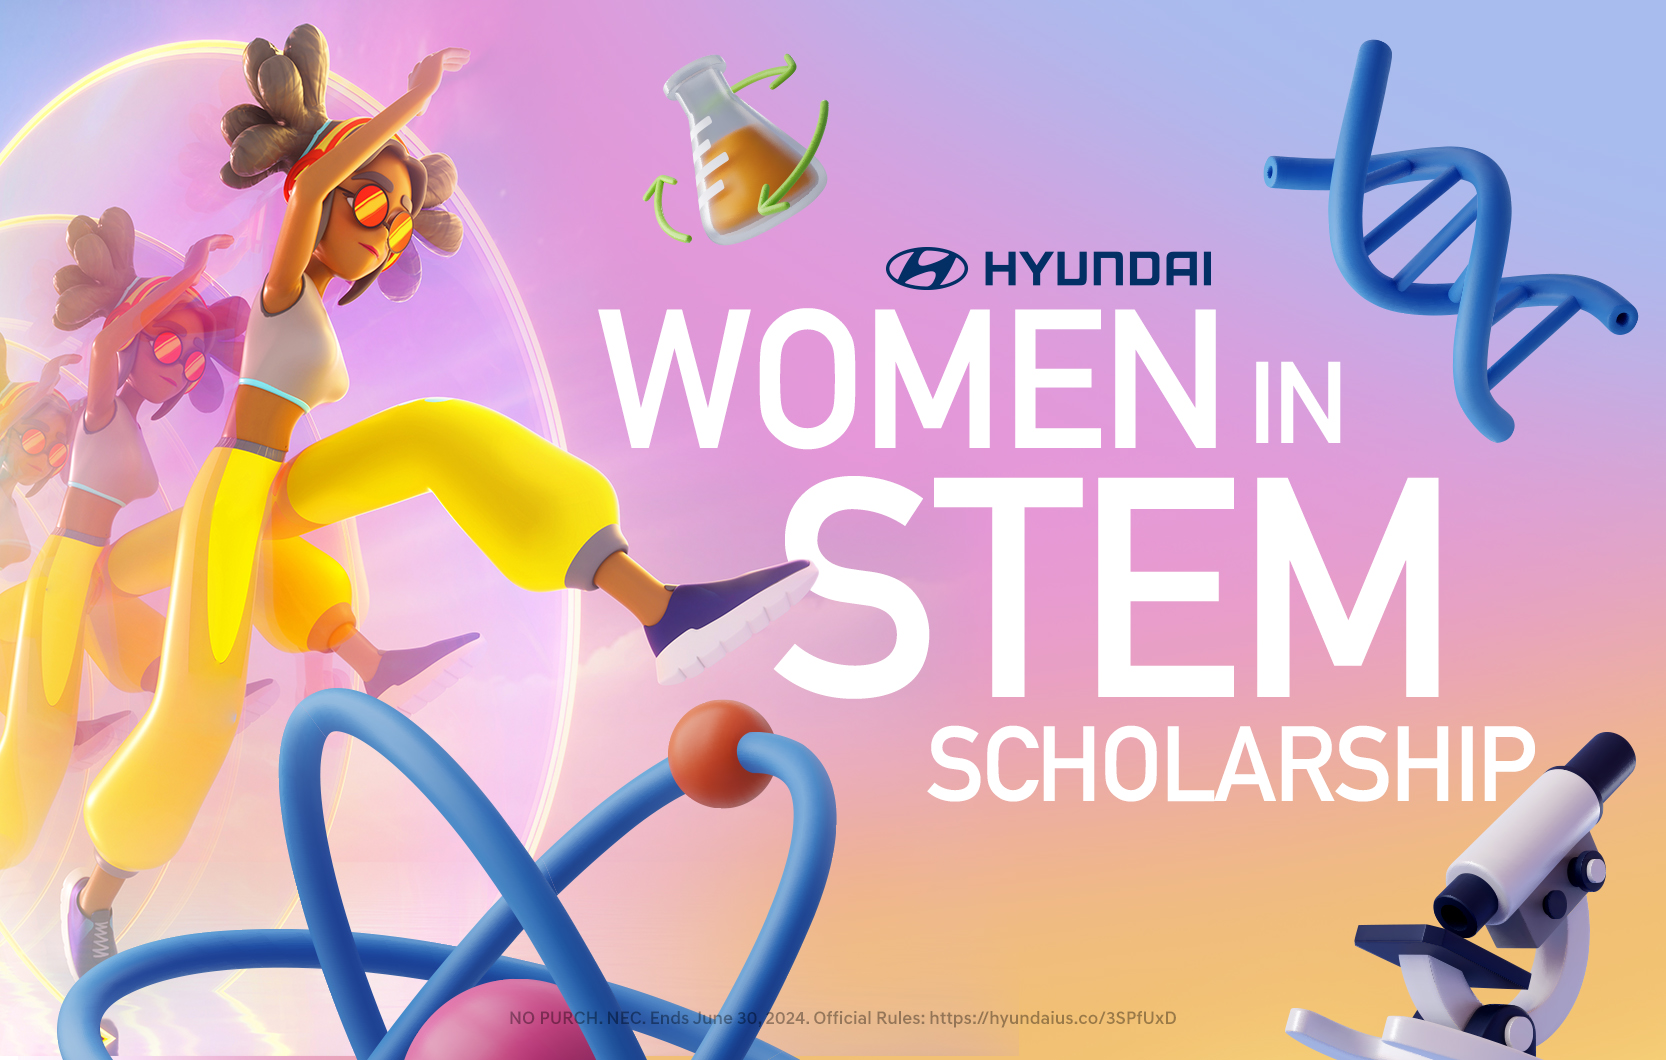 The Hyundai Women in STEM Scholarship